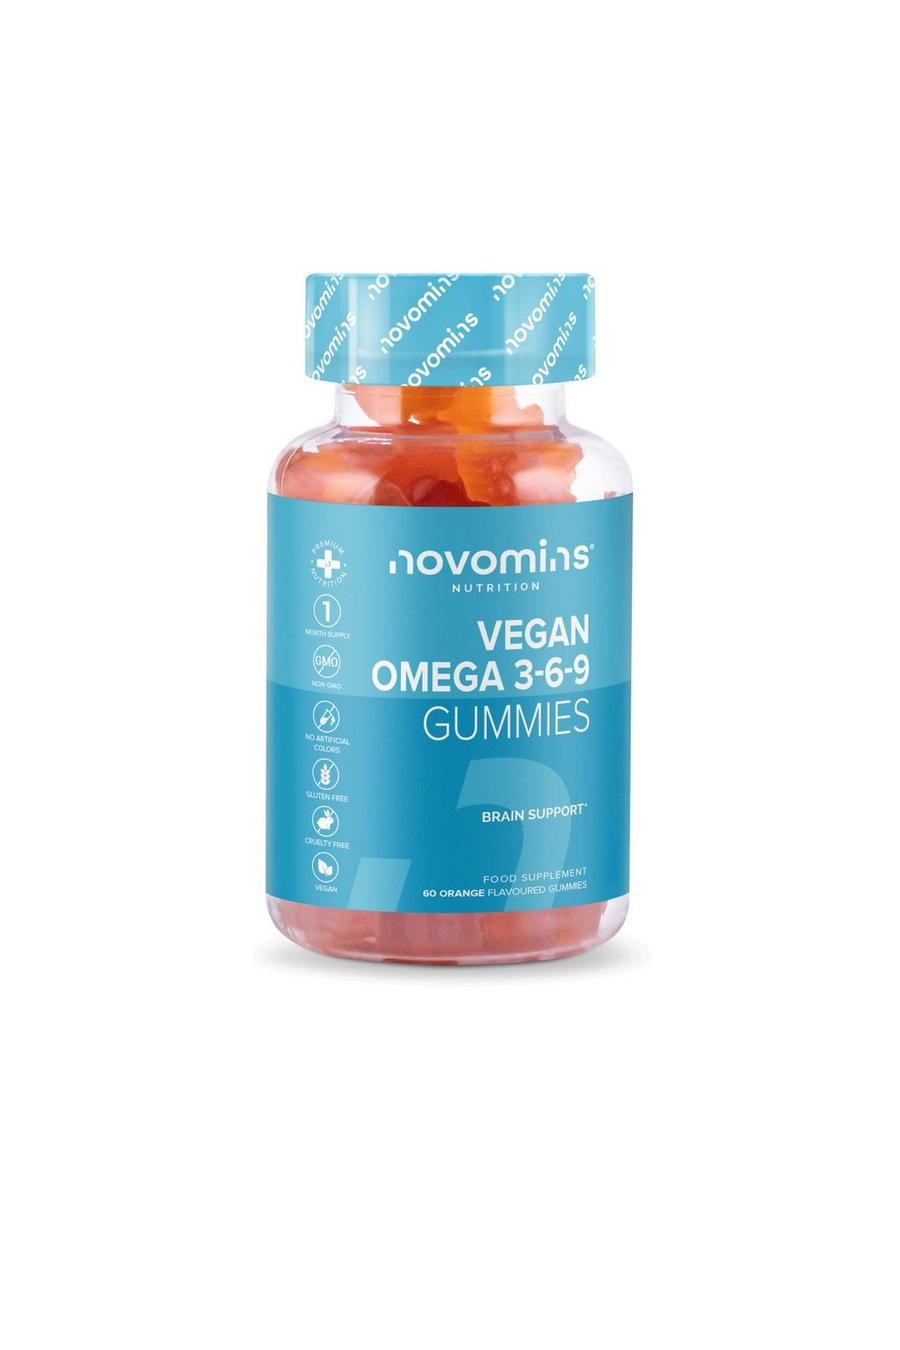 Orange Vegan Omega 3-6-9